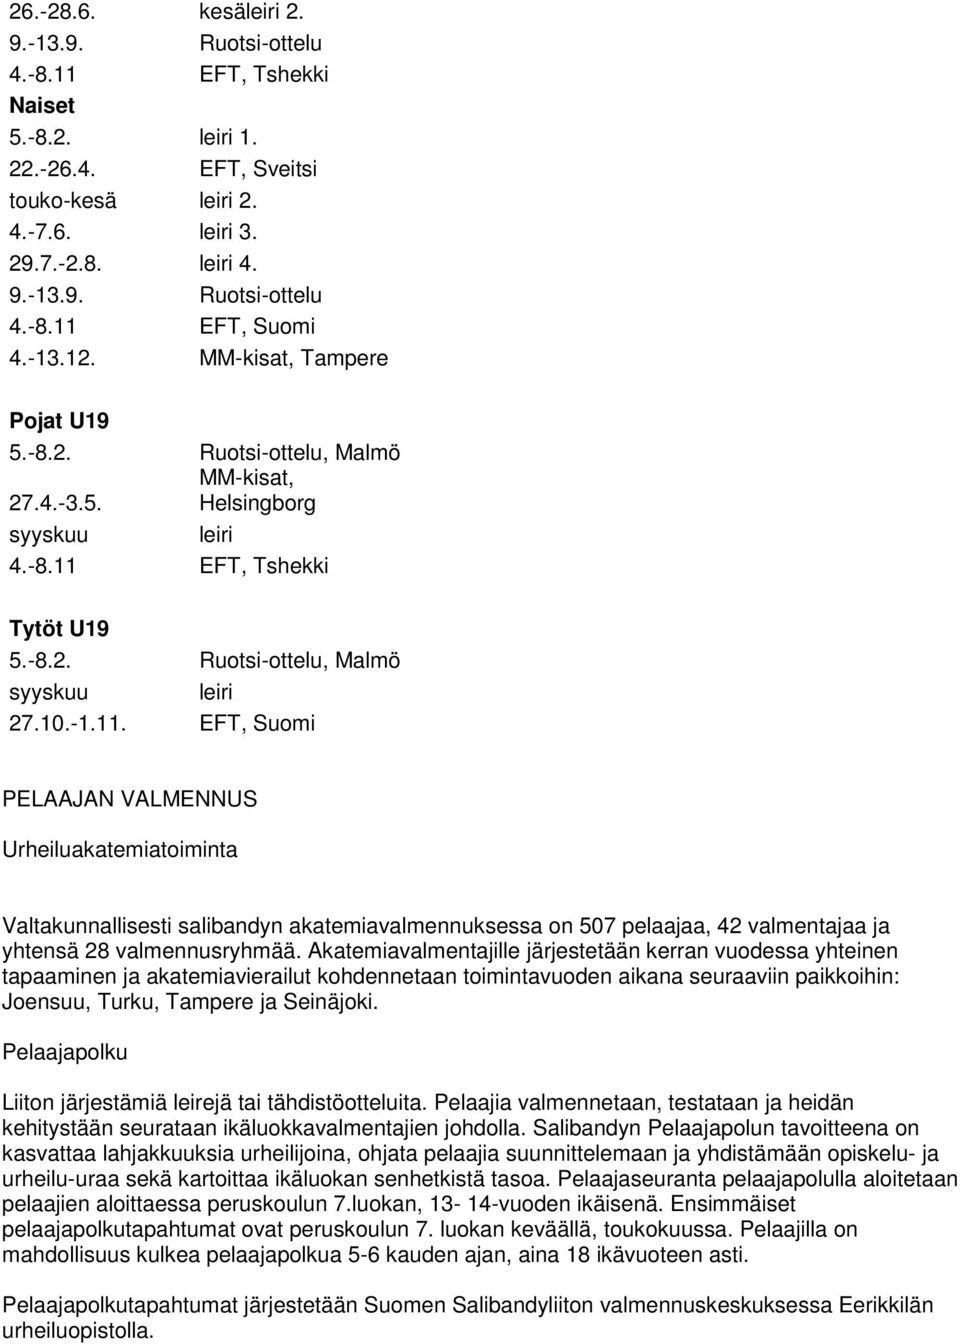 EFT, Tshekki Tytöt U19 5.-8.2. Ruotsi-ottelu, Malmö syyskuu leiri 27.10.-1.11.